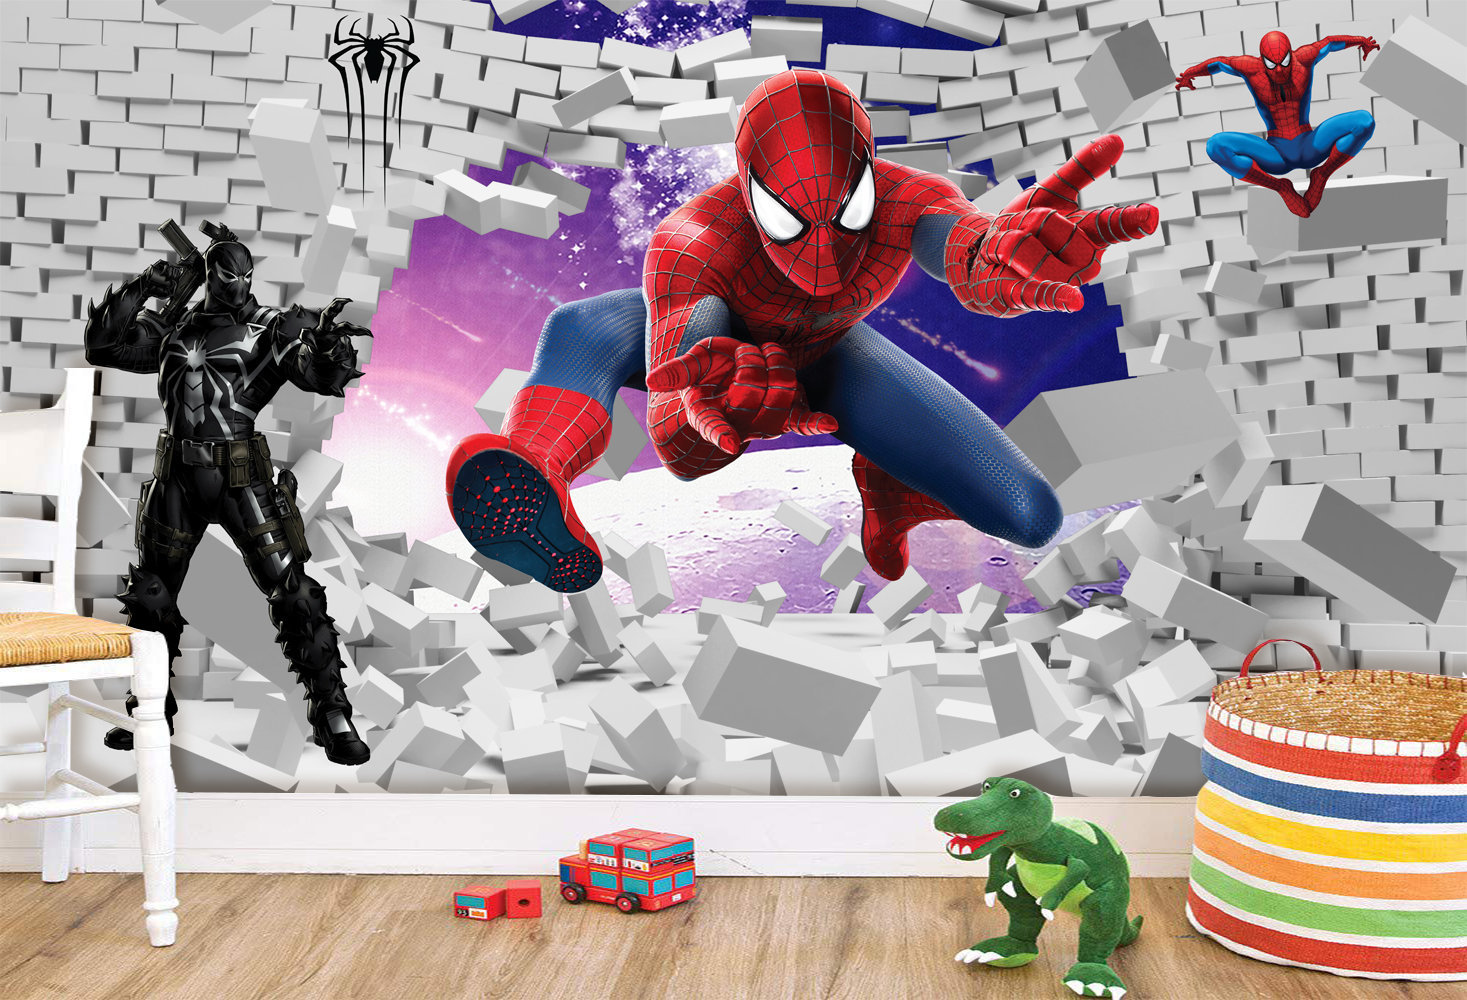 Tranh dán tường người nhện 3D dành cho phòng bé, các nhân vật siêu anh hùng 2164